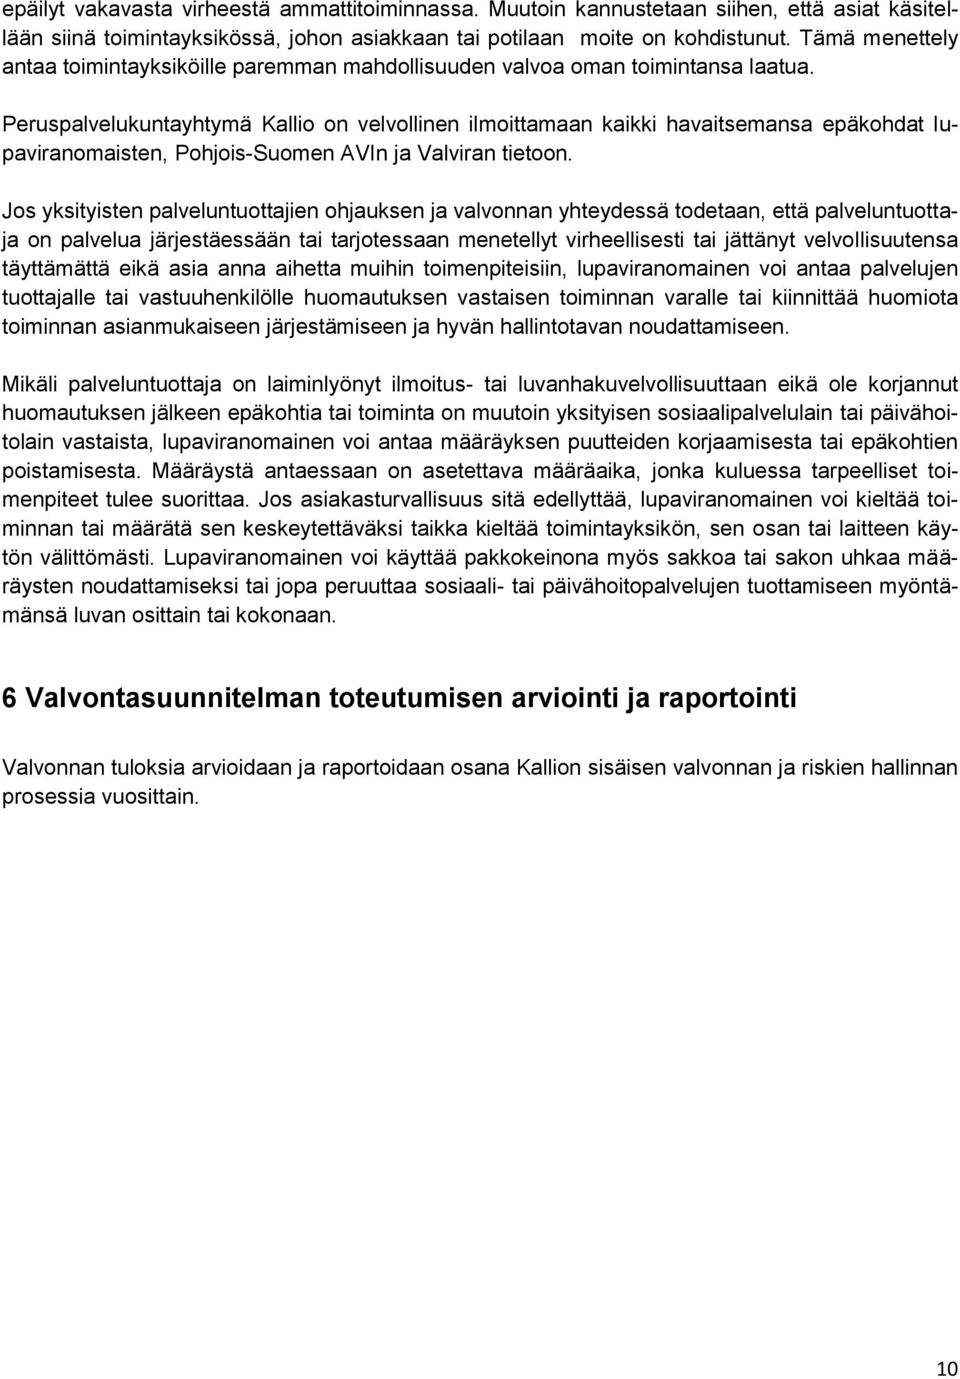 Peruspalvelukuntayhtymä Kallio on velvollinen ilmoittamaan kaikki havaitsemansa epäkohdat lupaviranomaisten, Pohjois-Suomen AVIn ja Valviran tietoon.